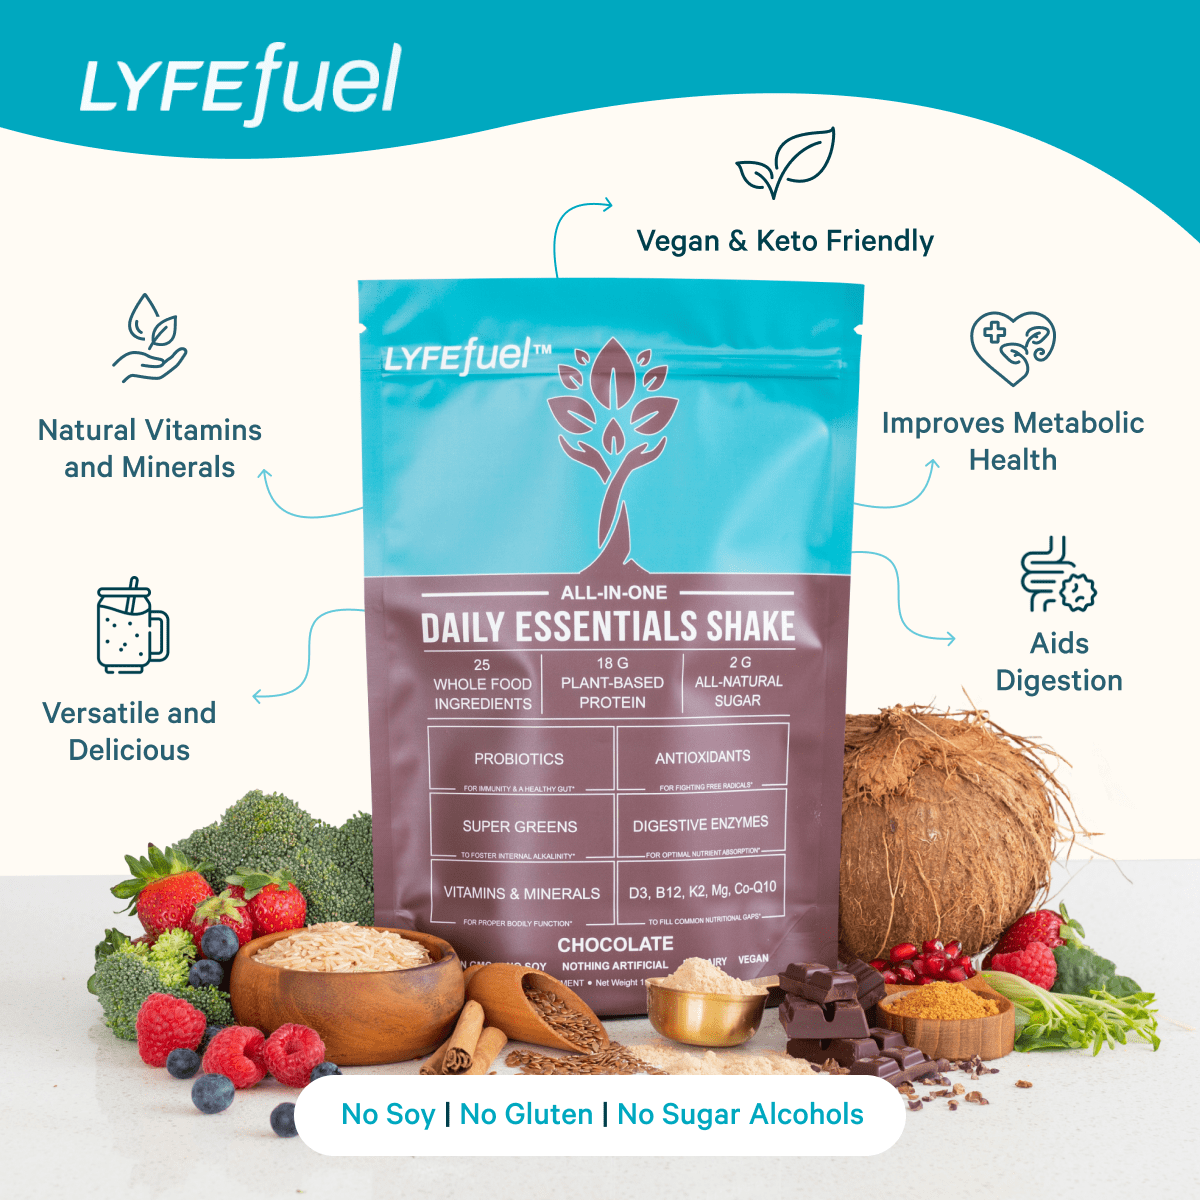 Vegan Premium Protein Smoothie Mix 1-lb. - Vital Life Formulas